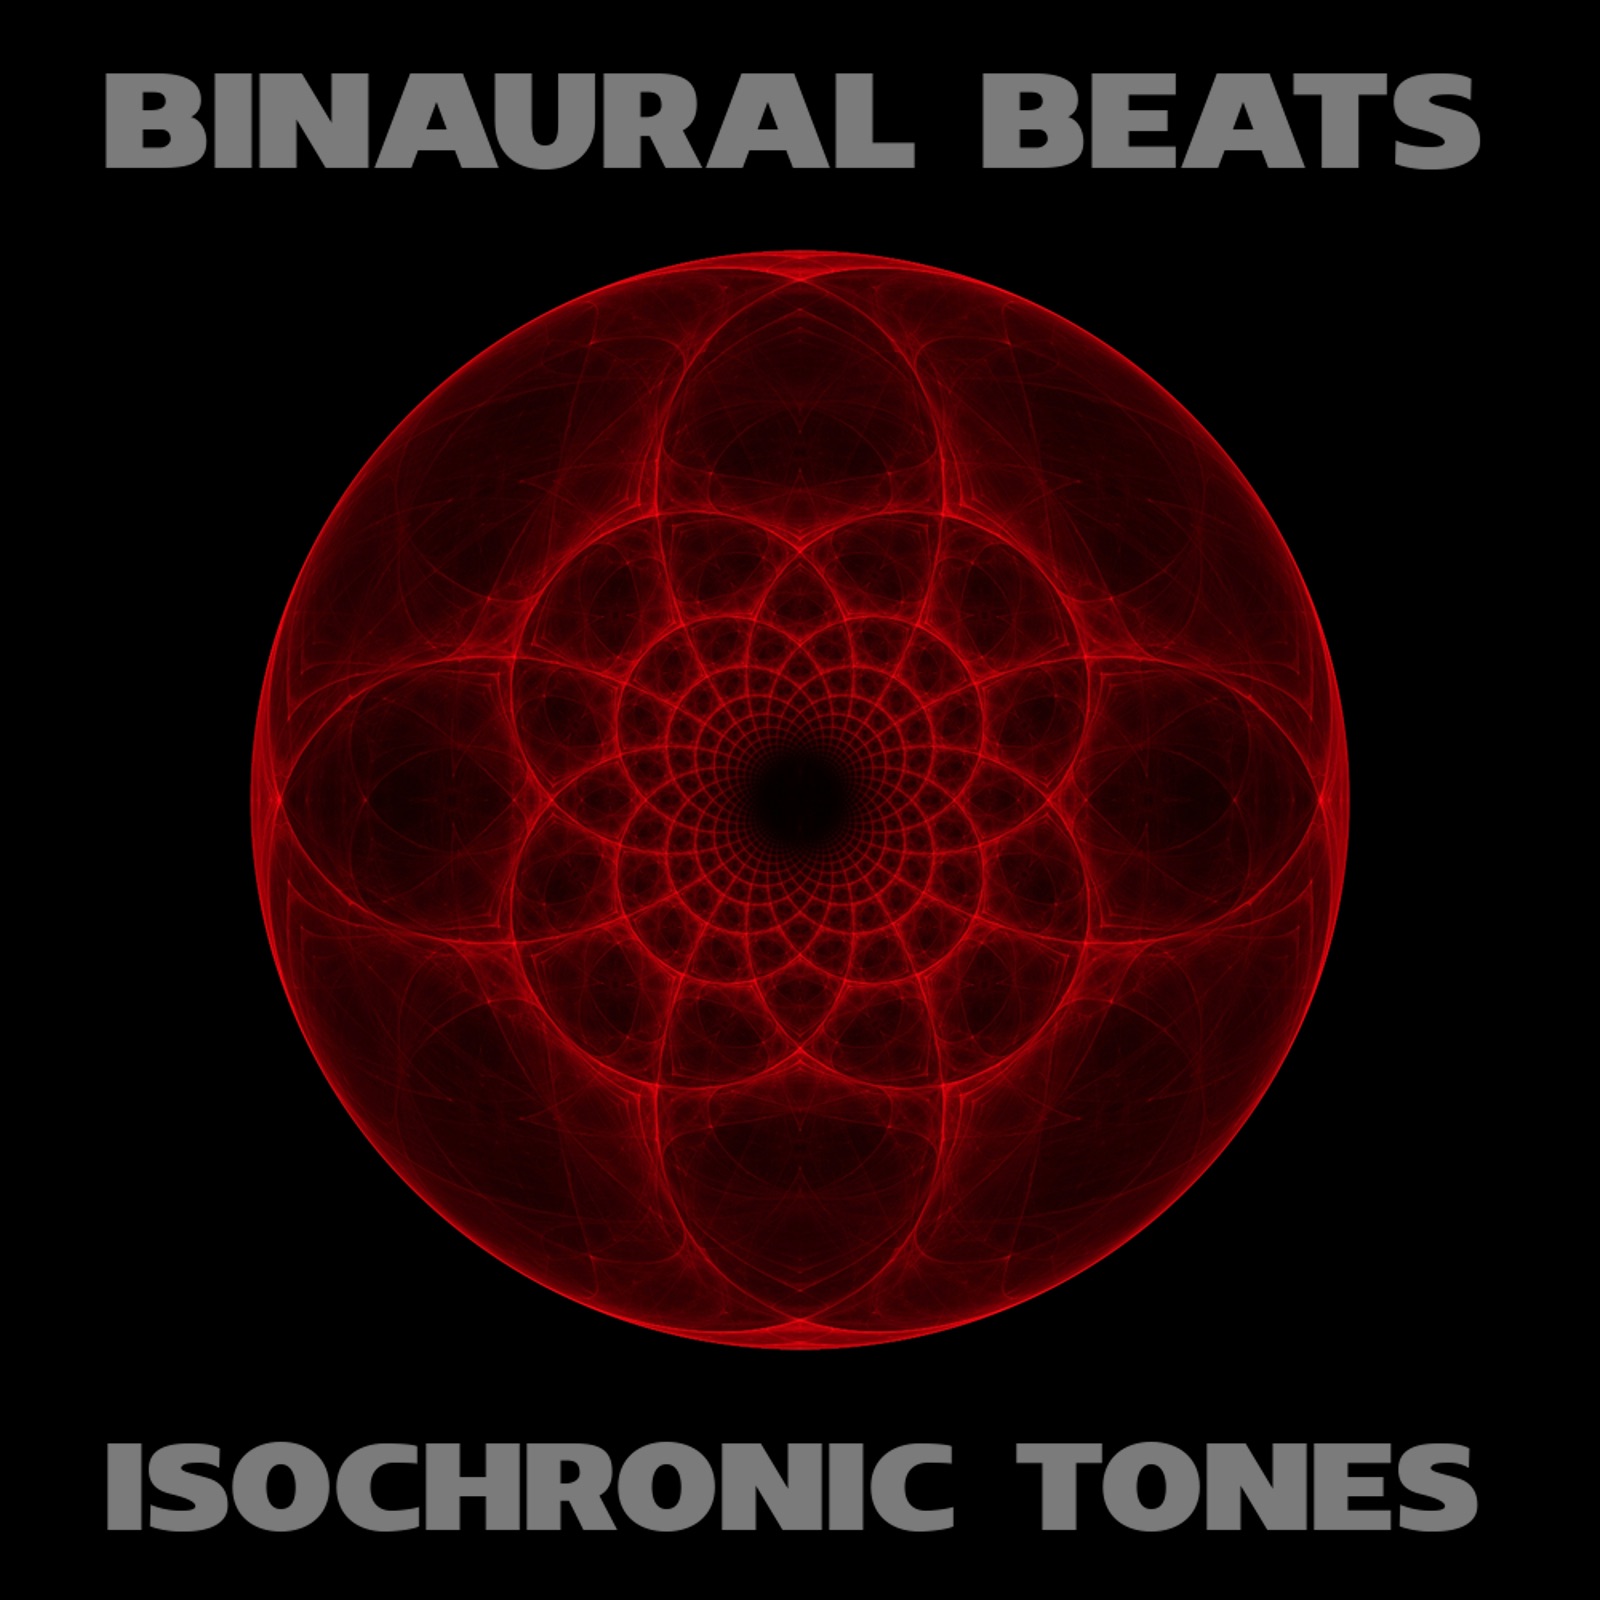 free binaural beats cc